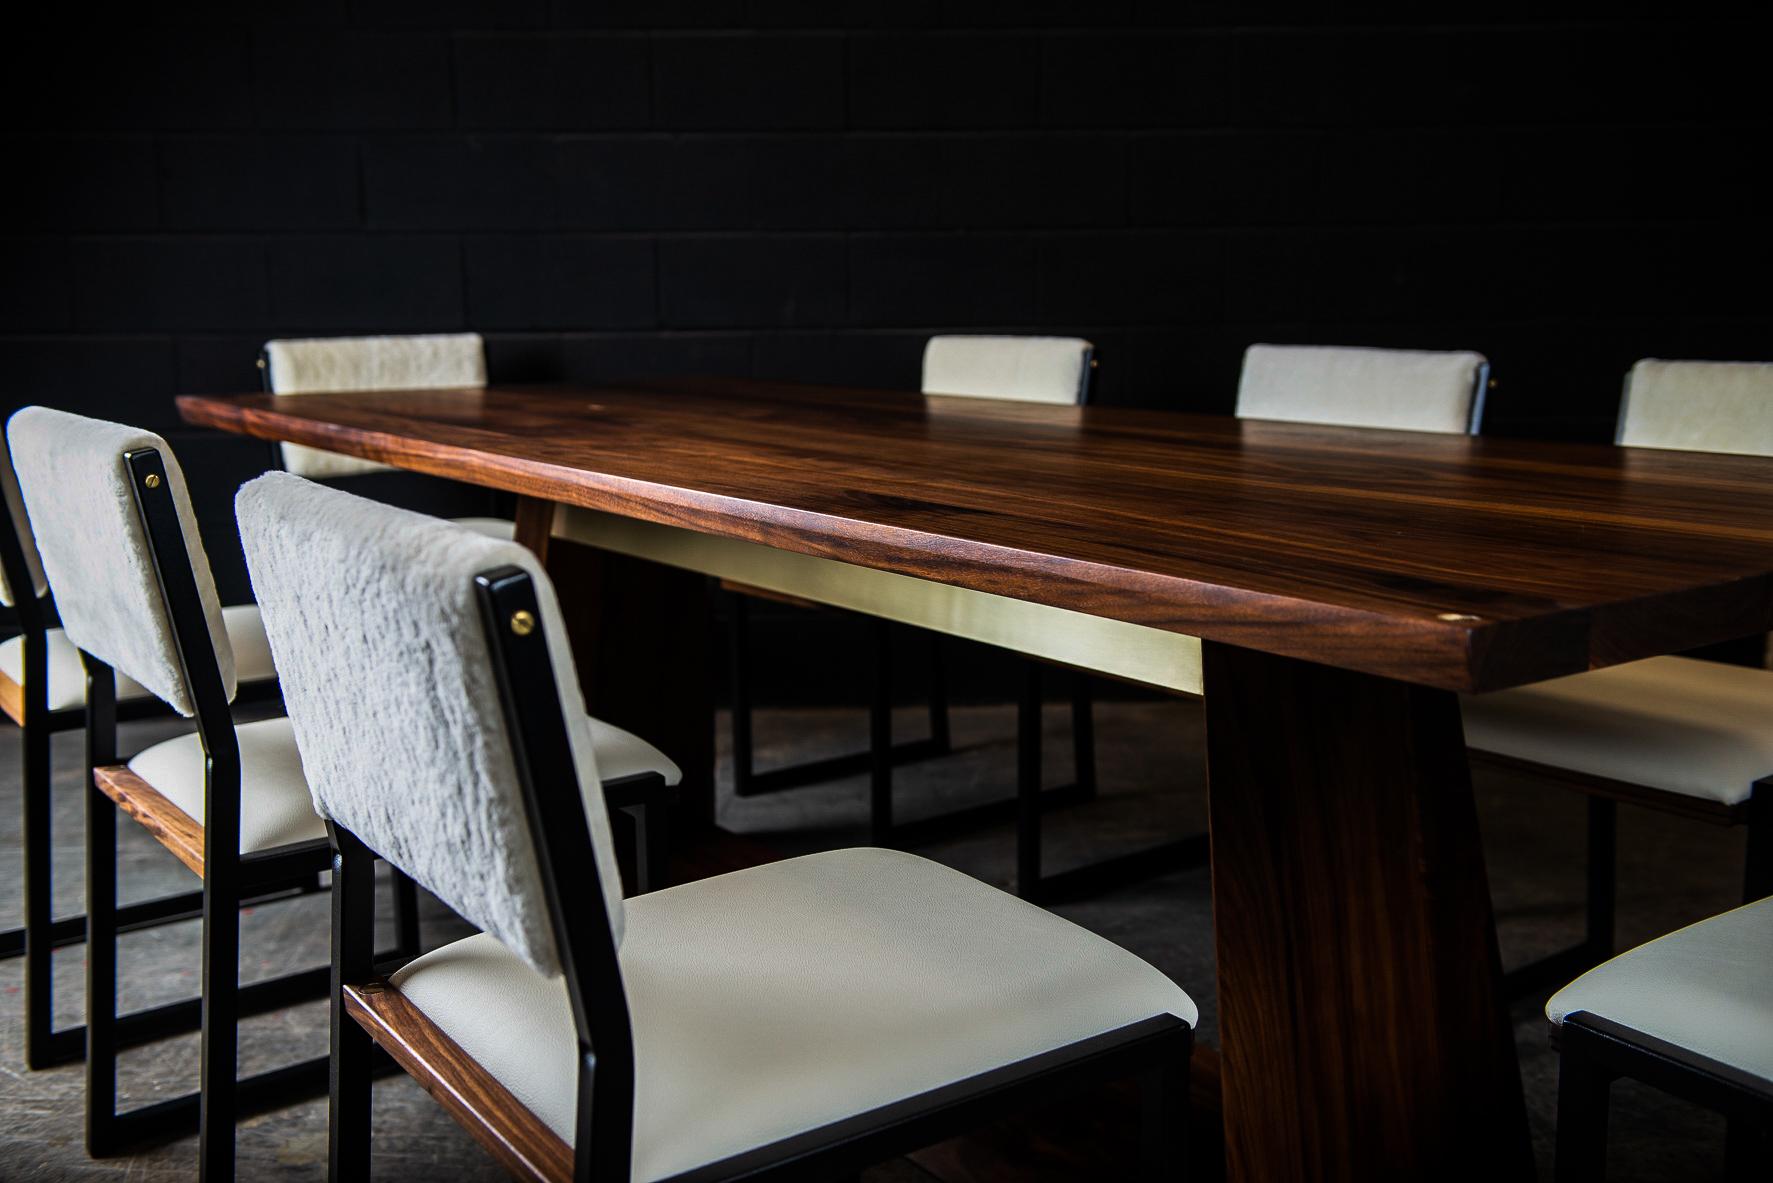 L'Oxford est une élégante table de salle à manger contemporaine fabriquée à la main sur commande à partir de bois dur américain massif sélectionné à la main, avec de subtils détails en laiton poli à la main. Tandis que l'élégante base centrale à